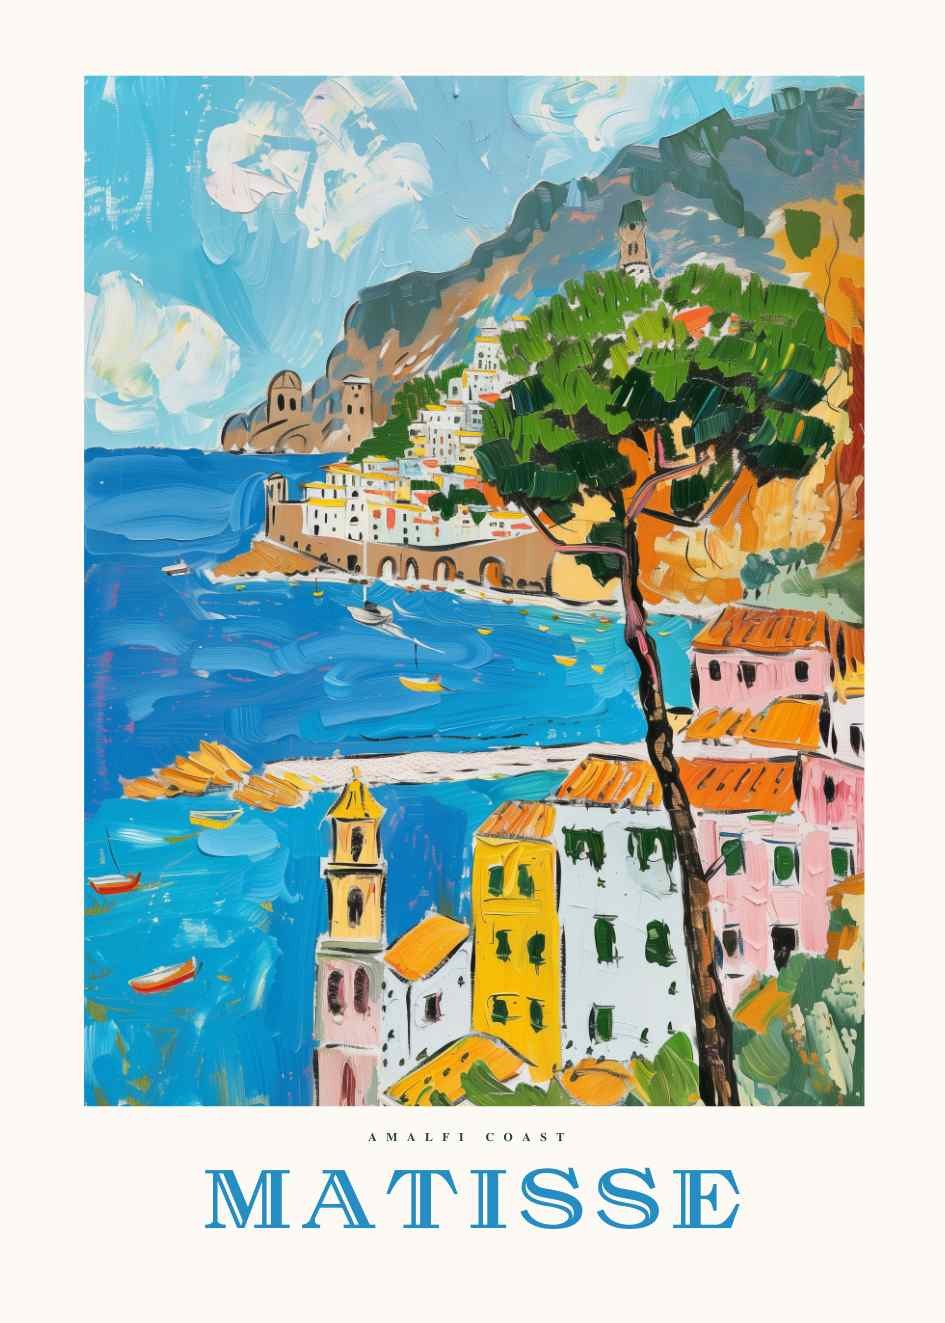 Matisse Plakat Italy...